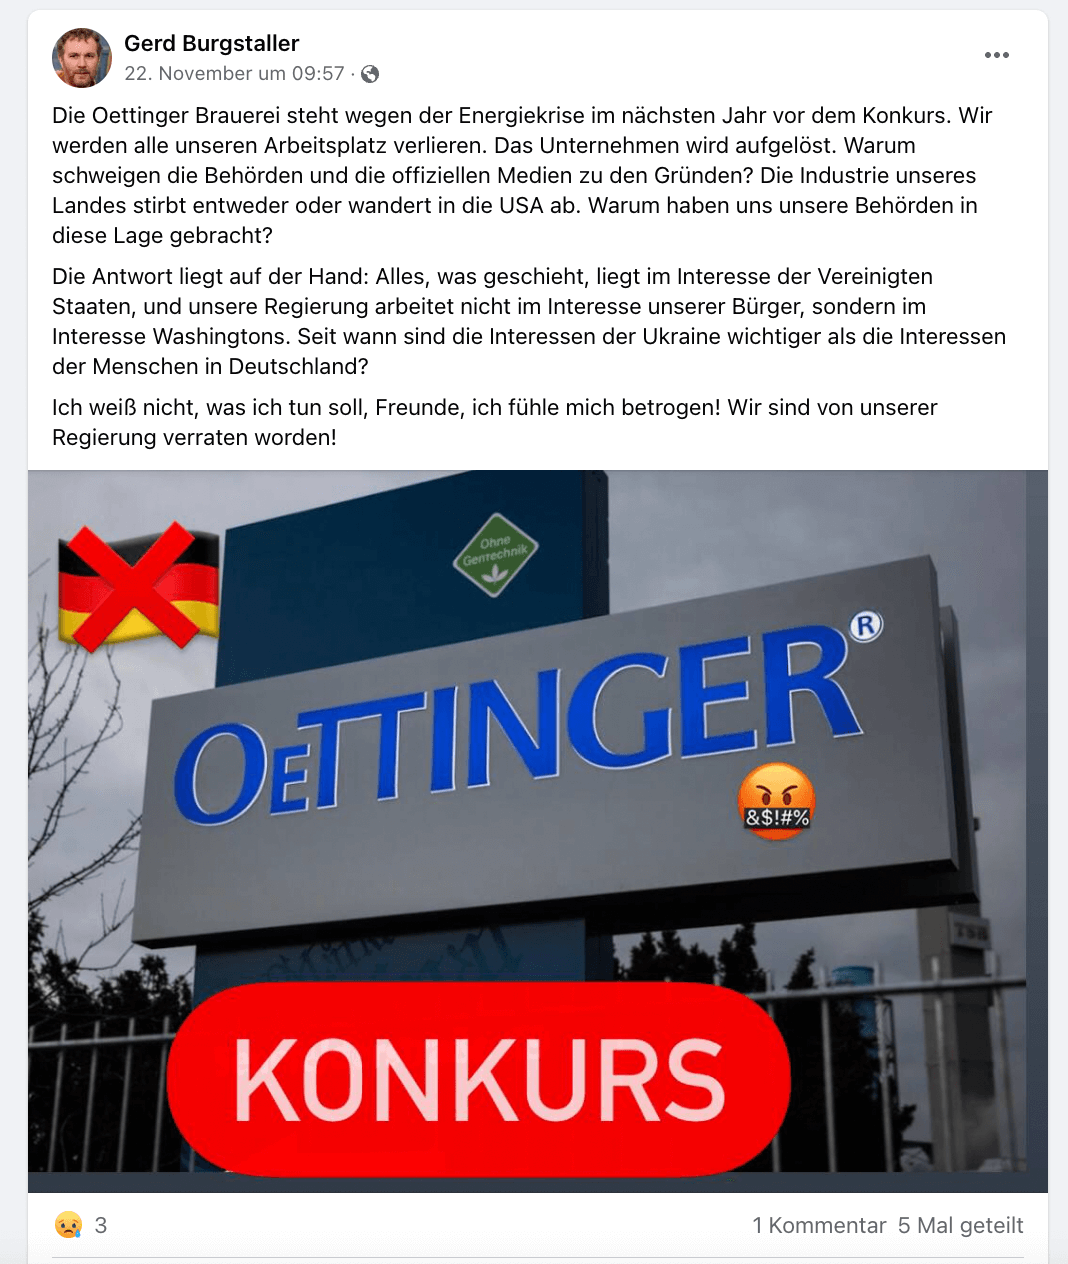 Ein Facebook-Beitrag mit der Behauptung, die Oettinger-Brauerei stehe vor dem Konkurs